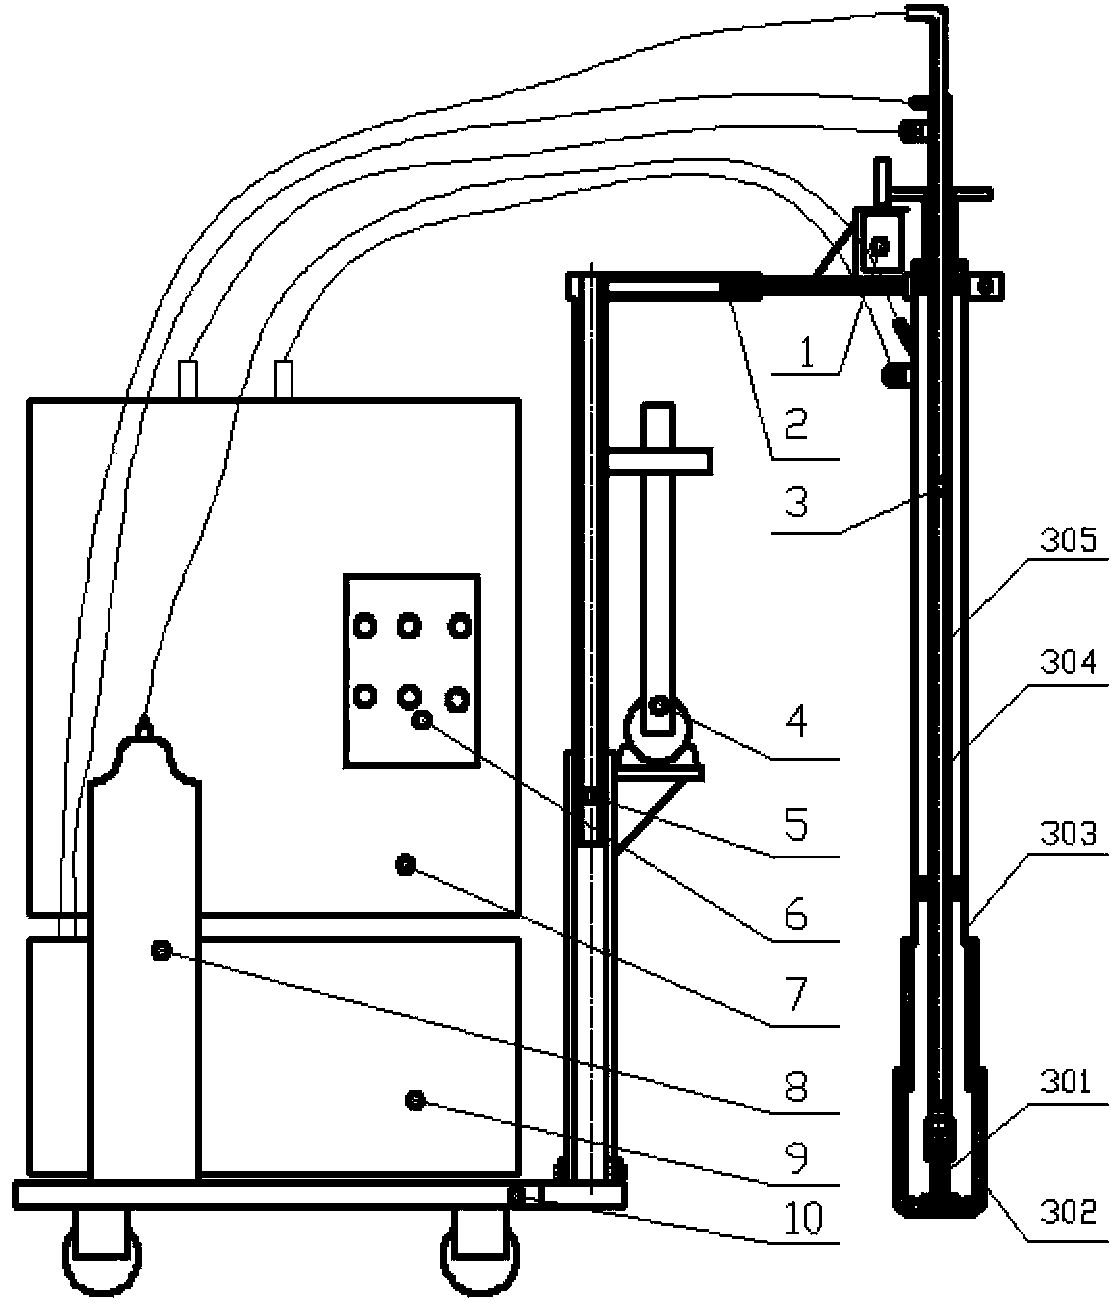 Plasma submerged arc heating method of 5 to 600-ton steel ingot riser